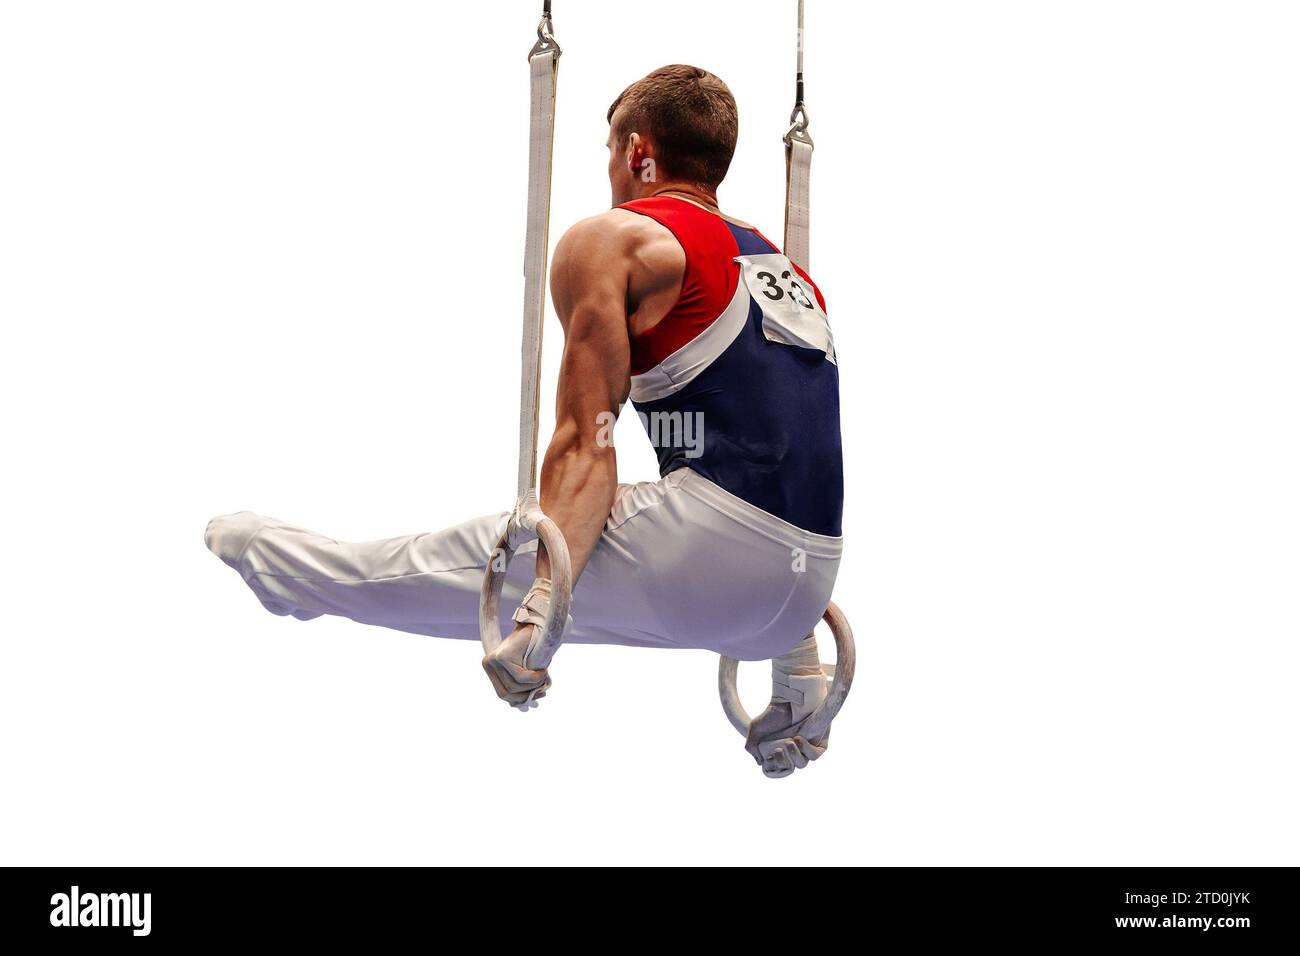 Männliche Turnerübung l-sitze Position auf Ringrahmen in der künstlerischen Gymnastik isoliert auf weißem Hintergrund, Sommersportspiele Stockfoto